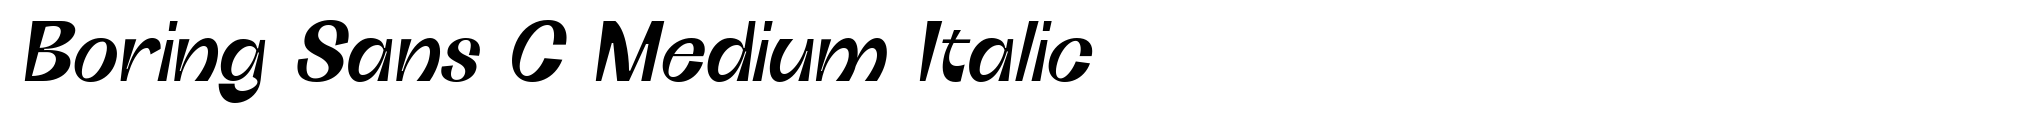 Boring Sans C Medium Italic image